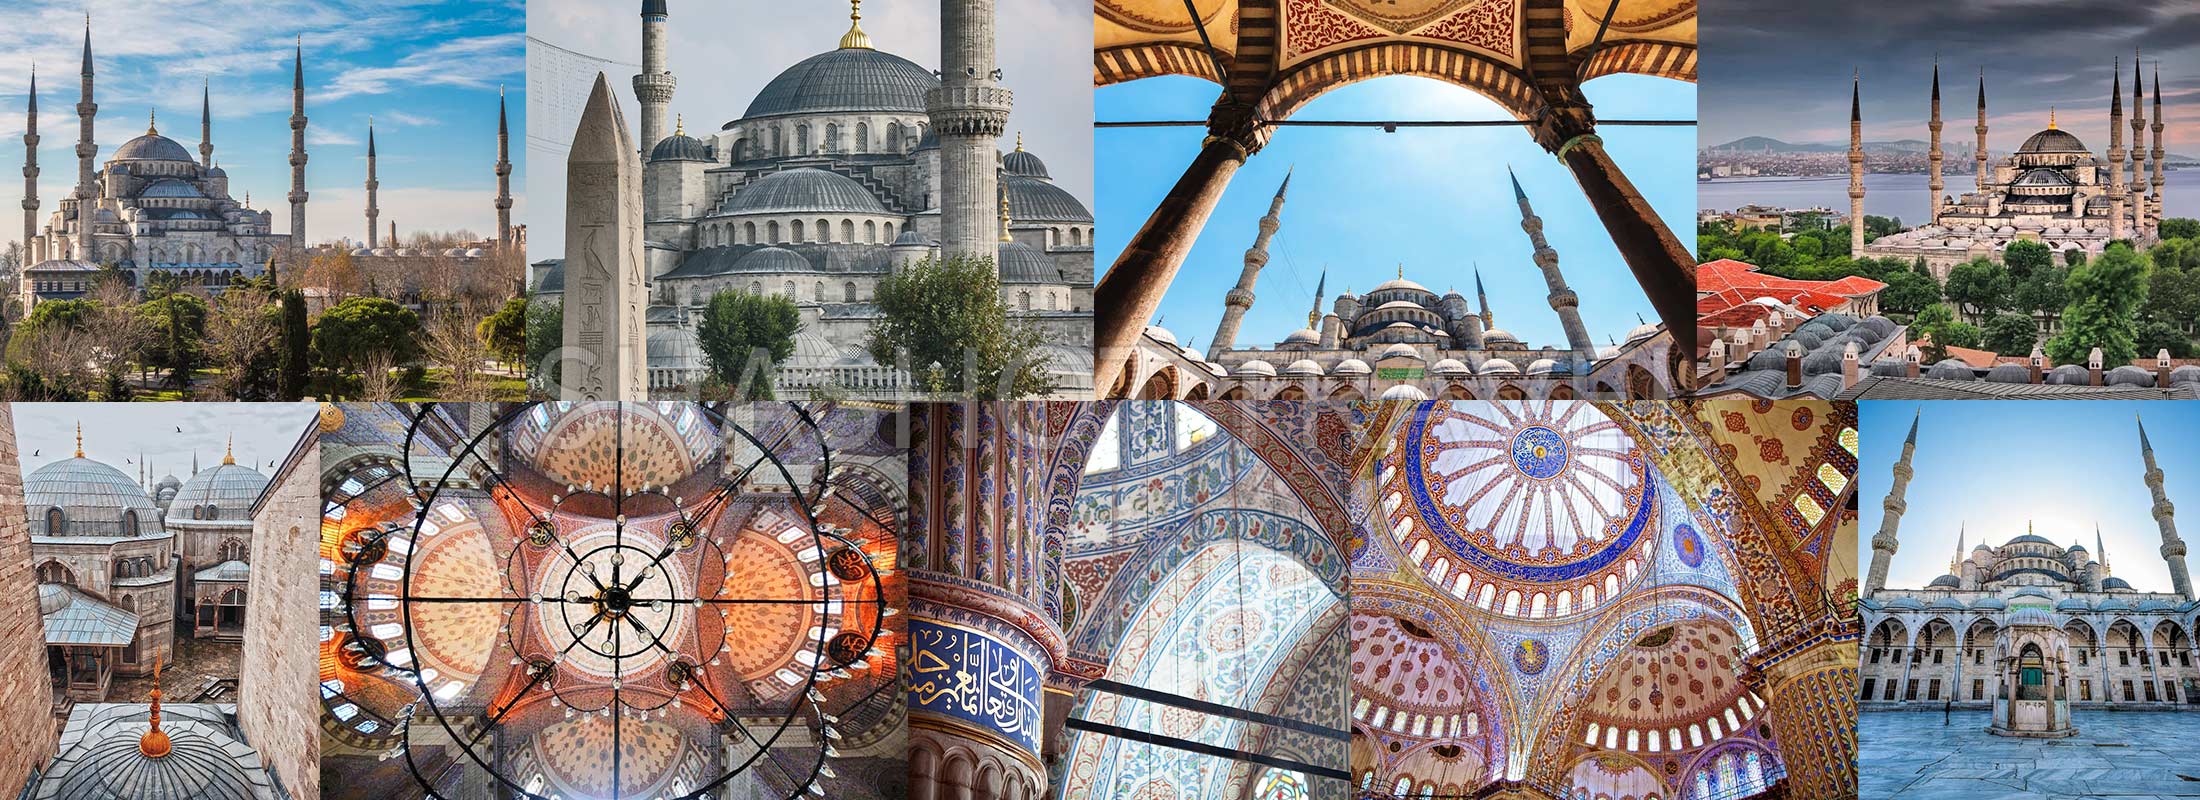 blue-mosque-istanbul-turkey-shashot-travel